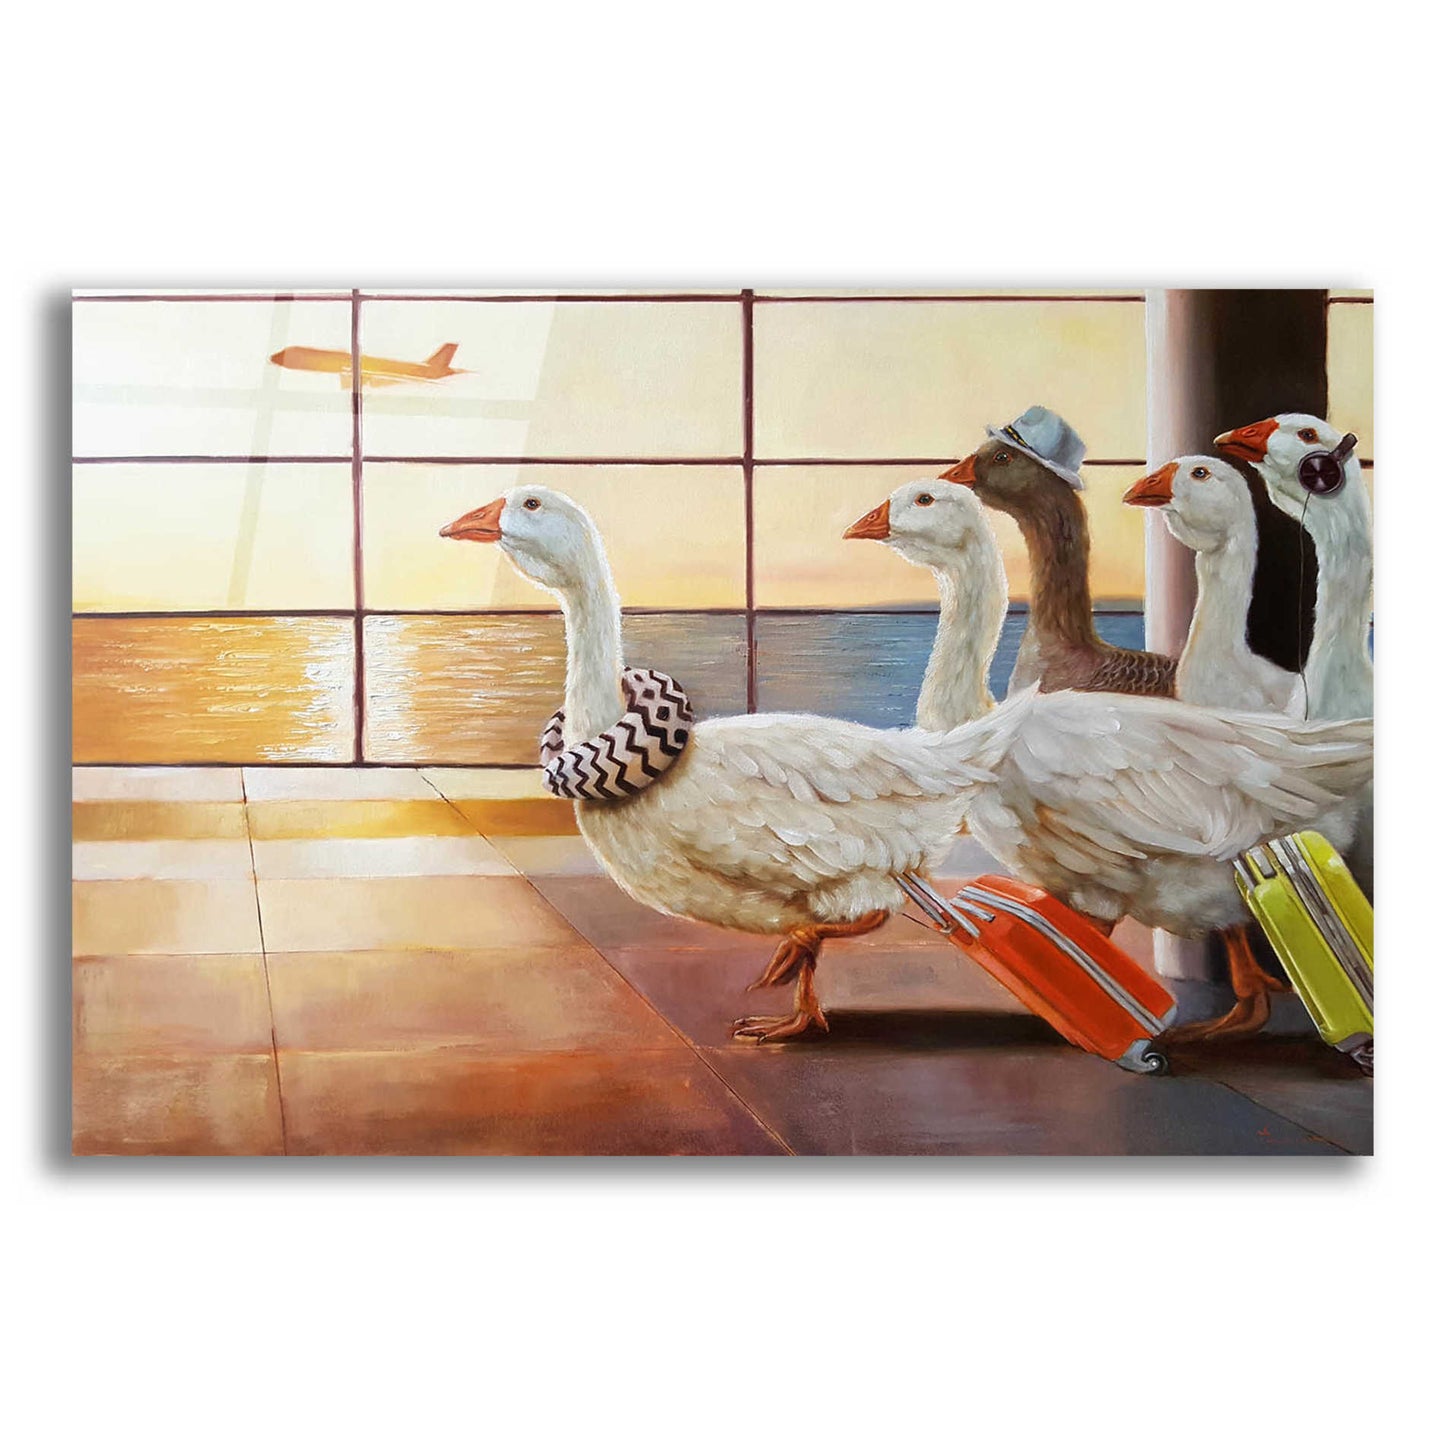 Epic Art 'First Class Migration' by Lucia Heffernan, Acrylic Glass Wall Art,16x12